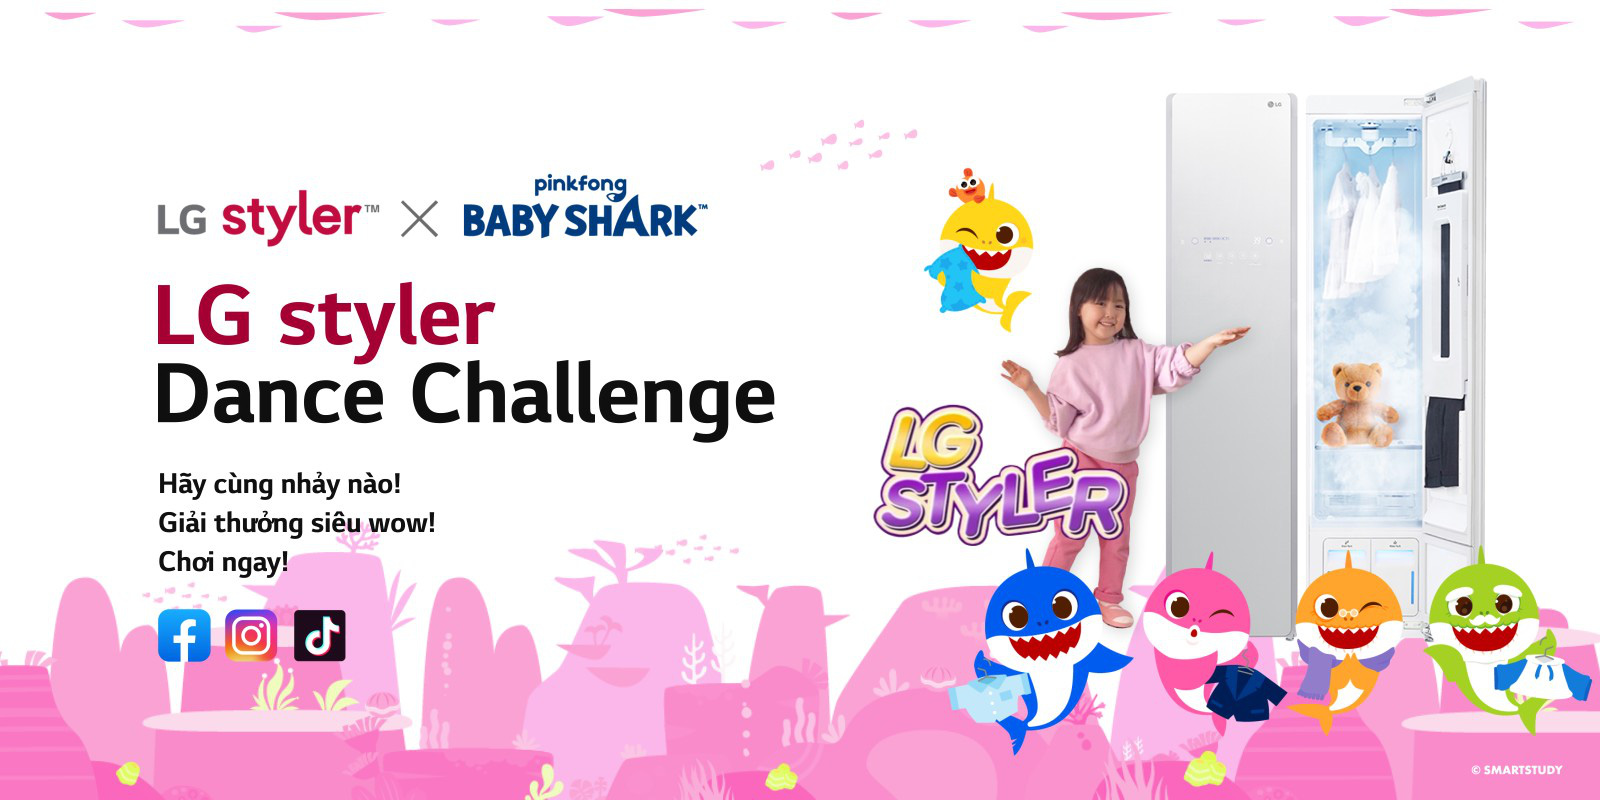 Giải mã điệu nhảy Pinkfong Baby Shark x LG Styler hot nhất trên Tiktok hiện nay - Ảnh 2.